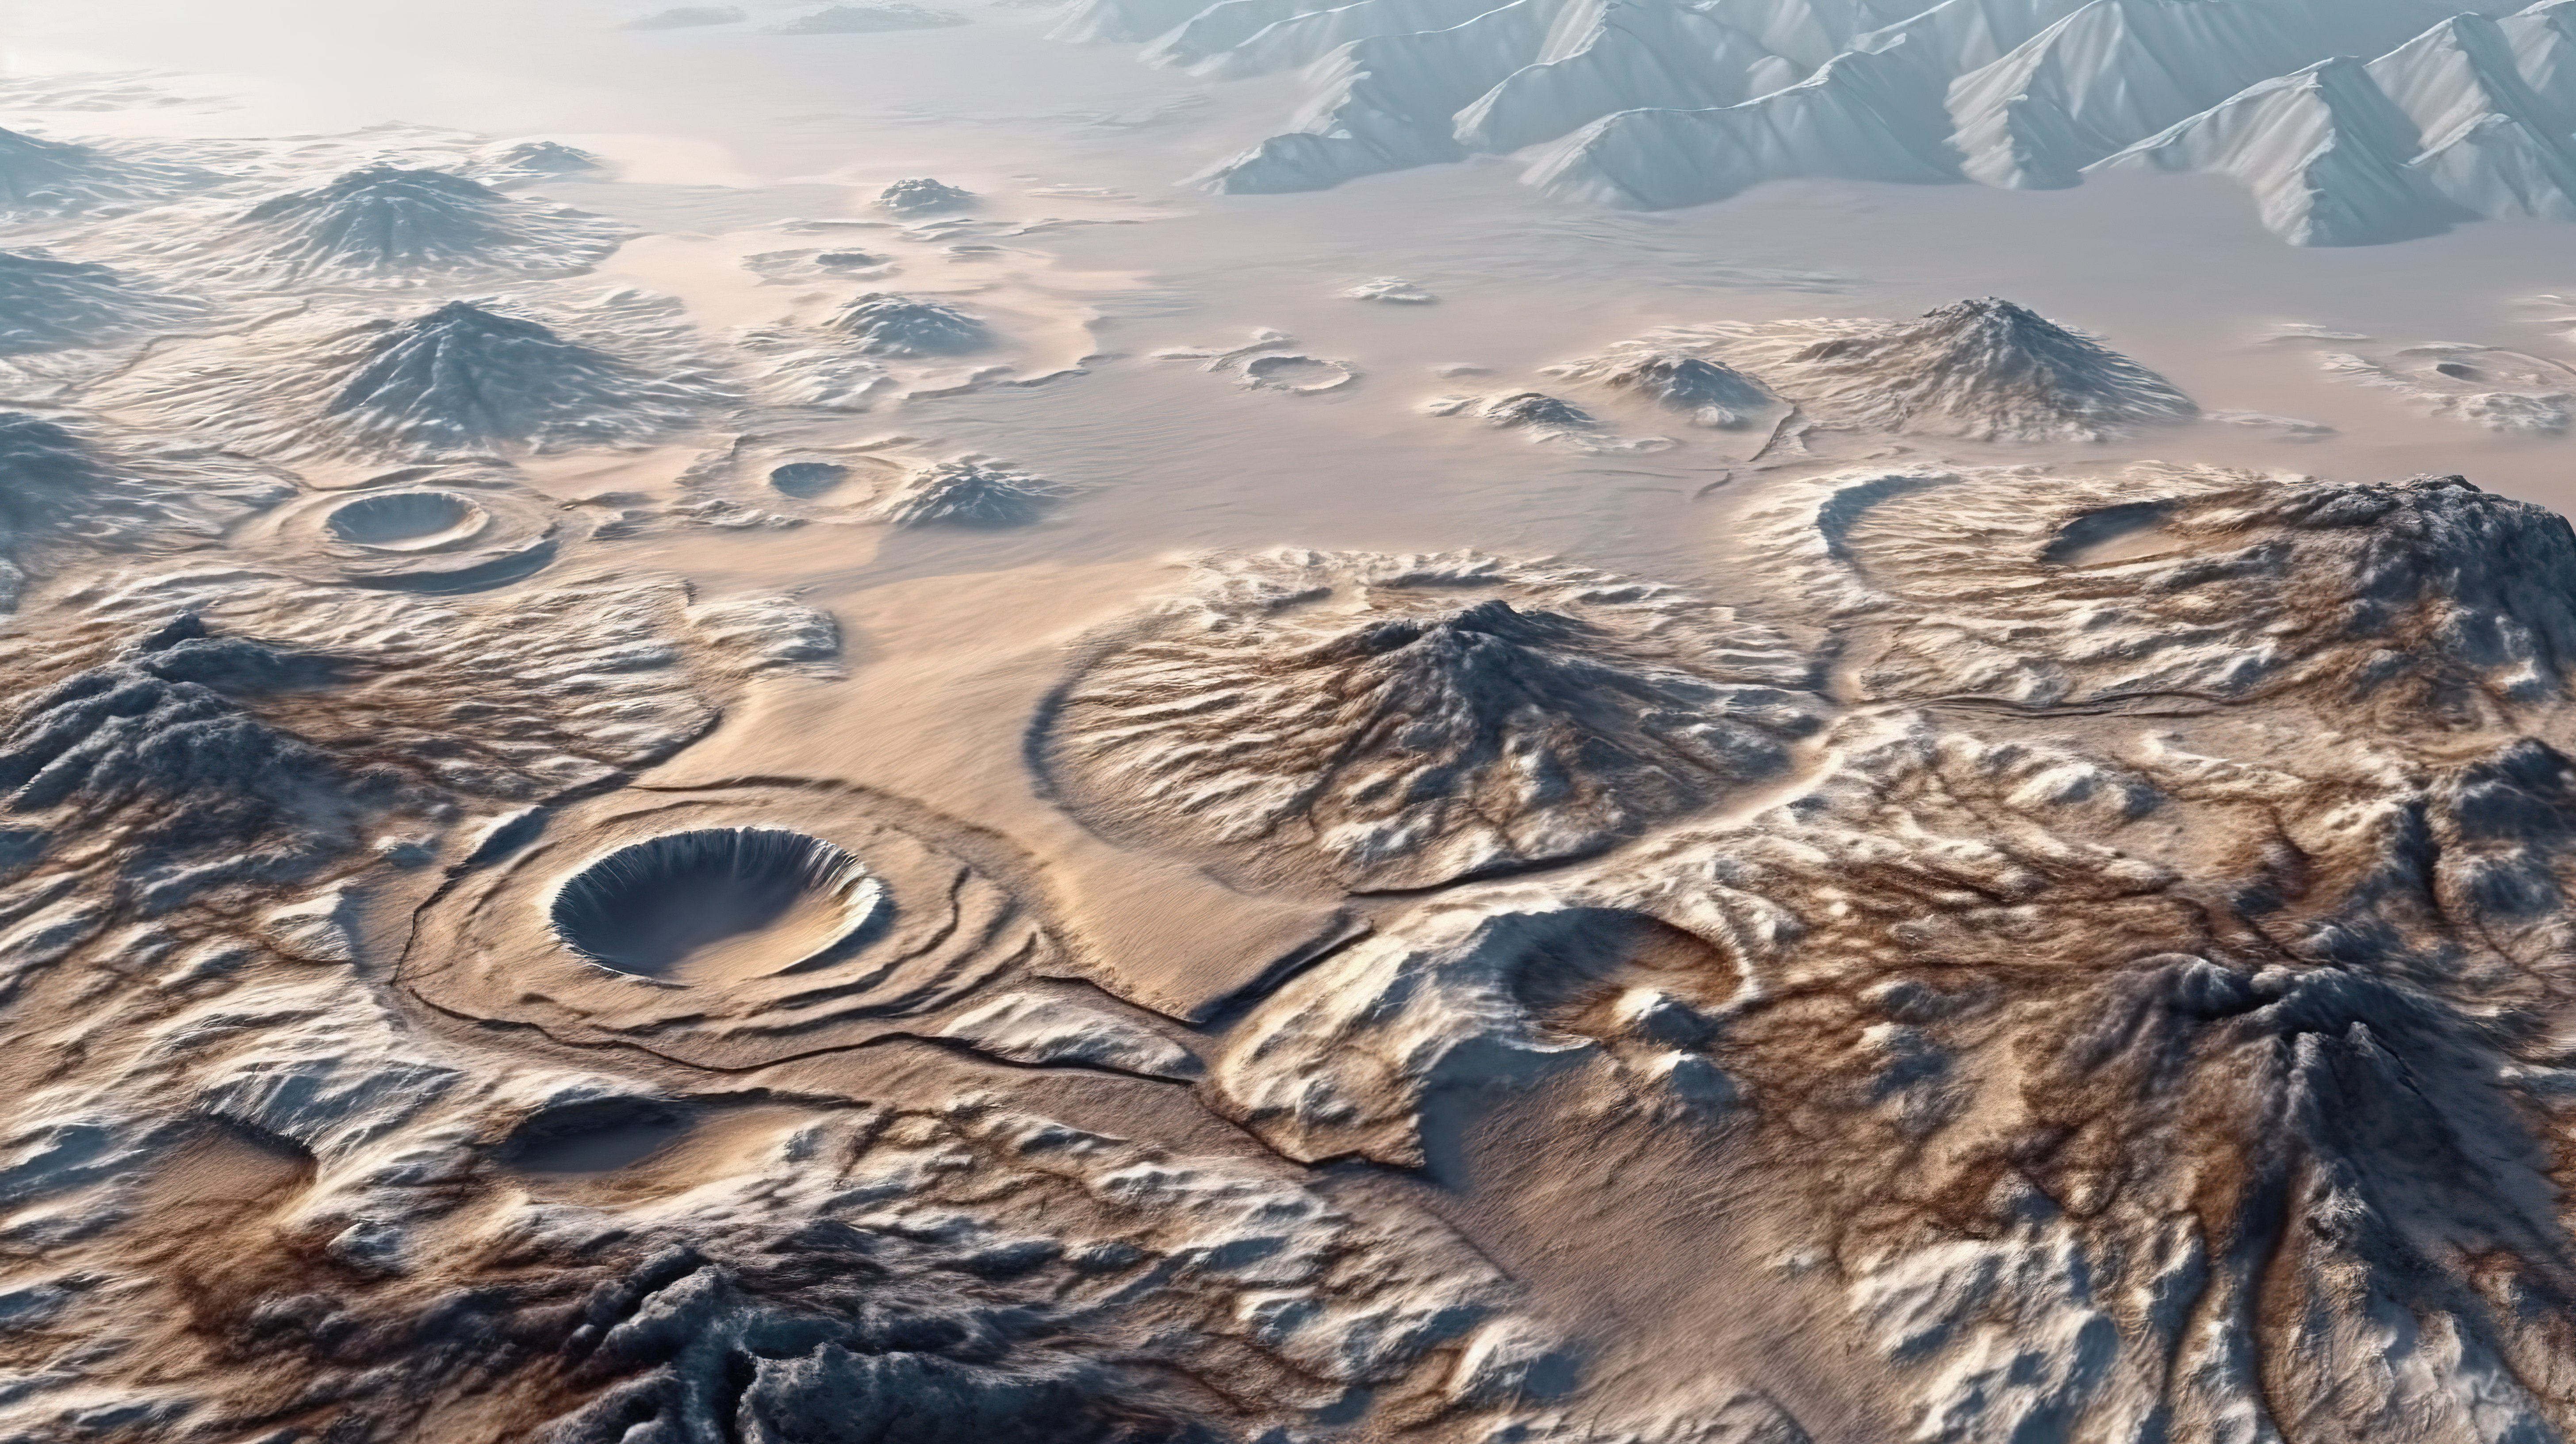 落基山远景抽象景观与令人惊叹的 3D 陨石坑地形图片